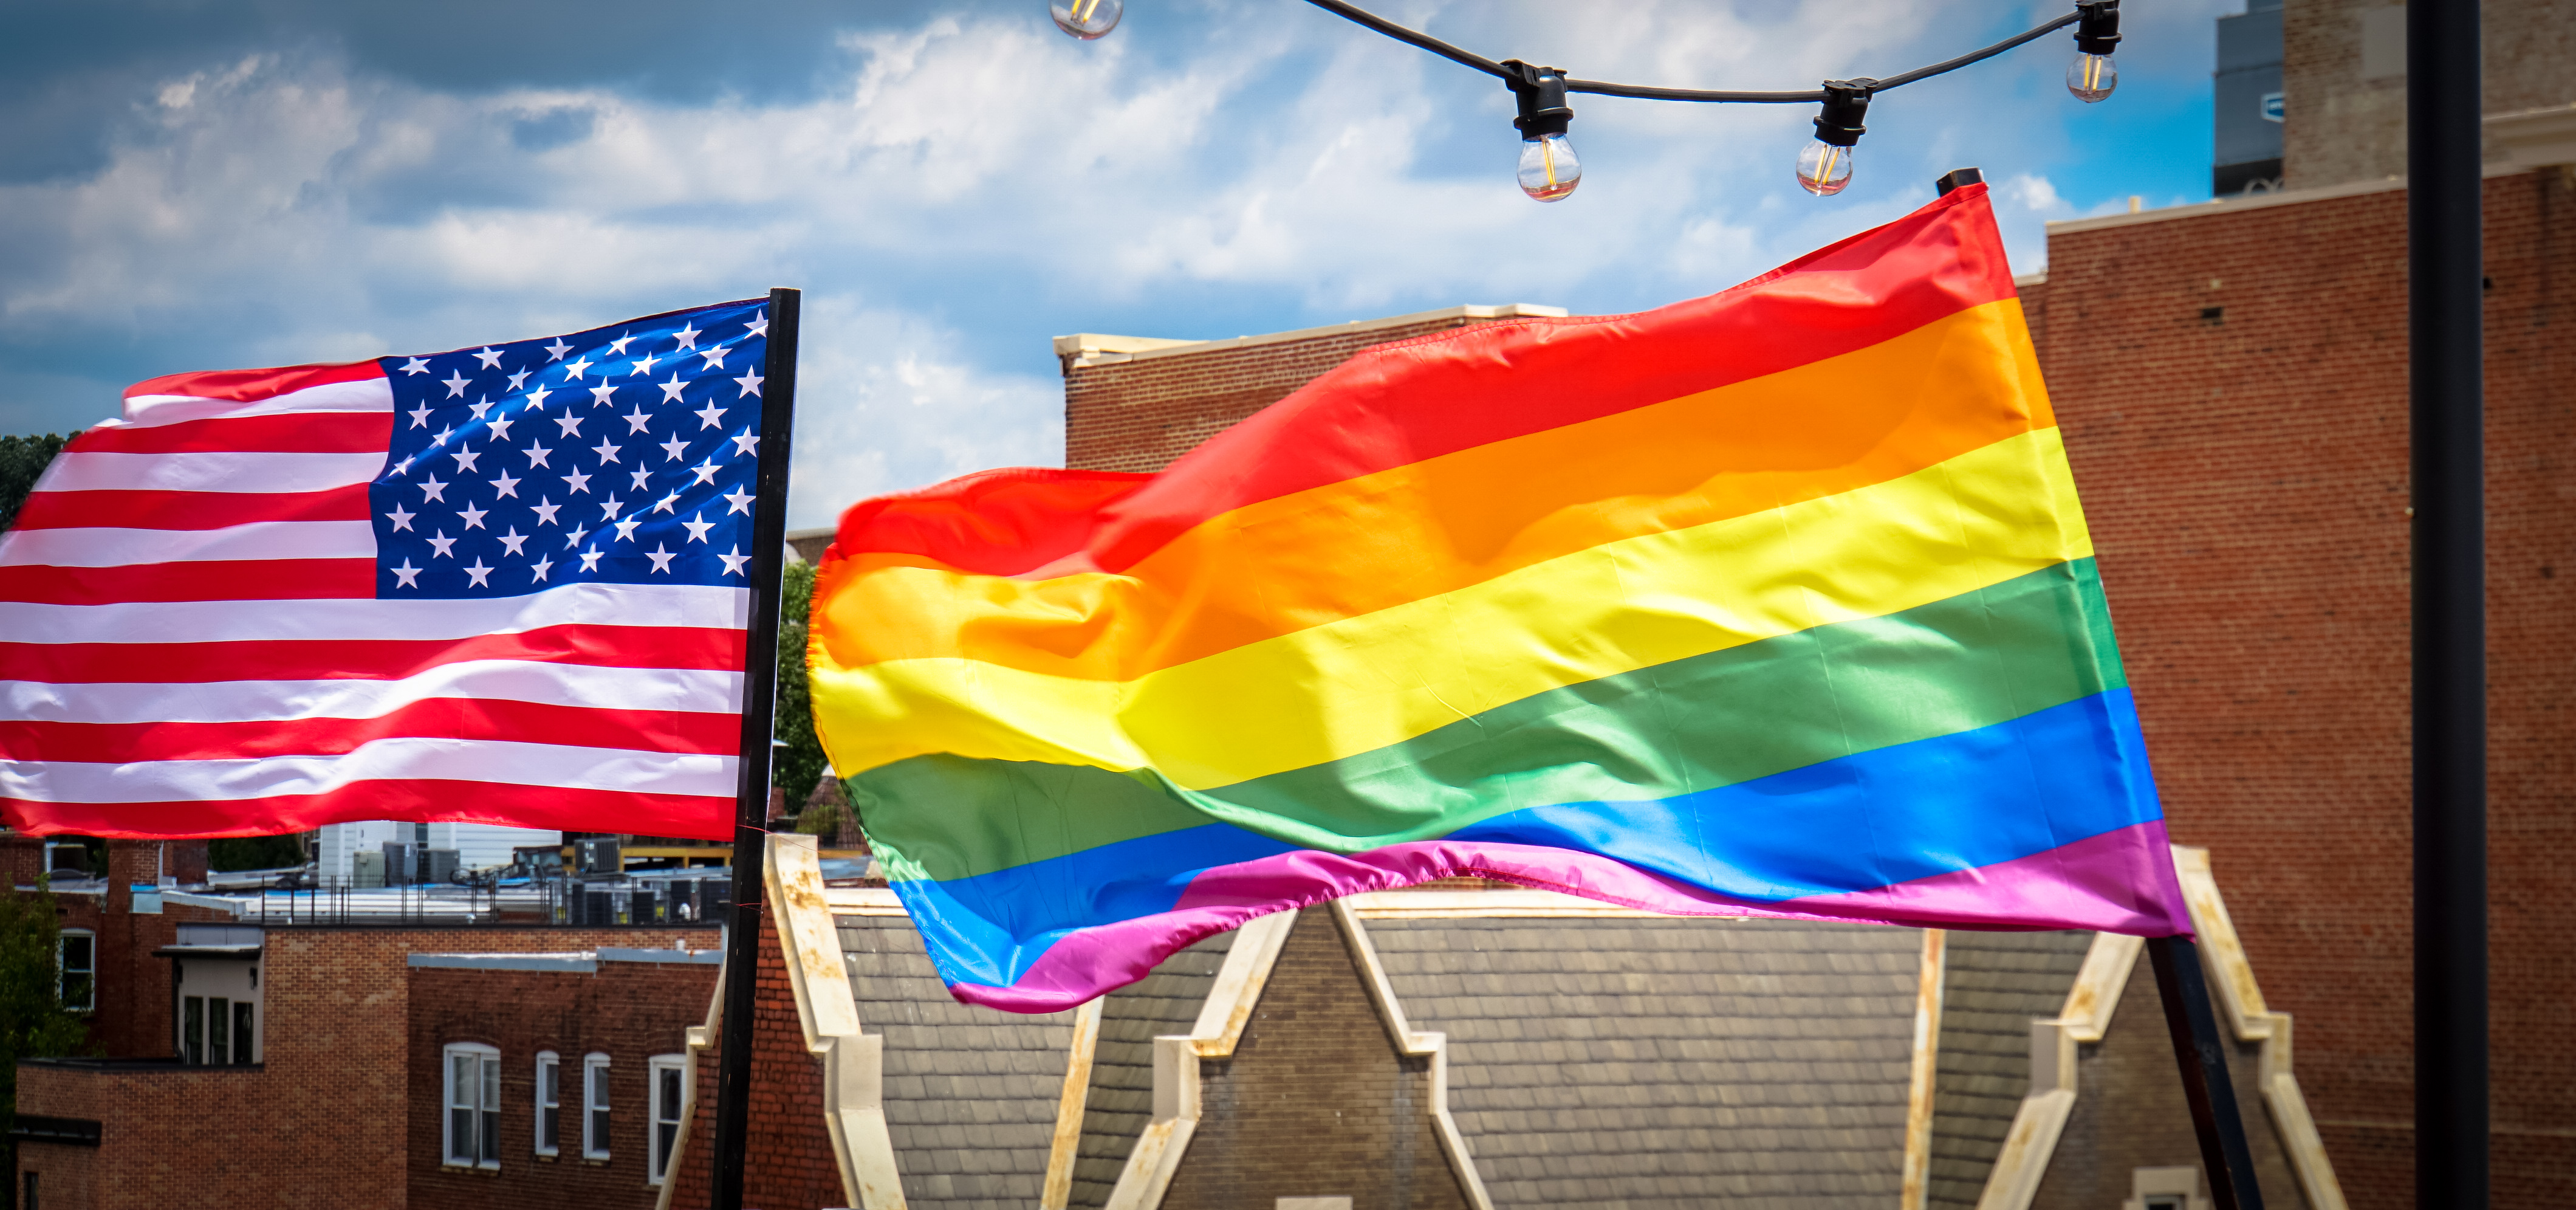 Rainbow flags fly over Washington, DC. (Courtesy: Ted Eytan, CC BY-SA 2.0, via Wikimedia Commons.)